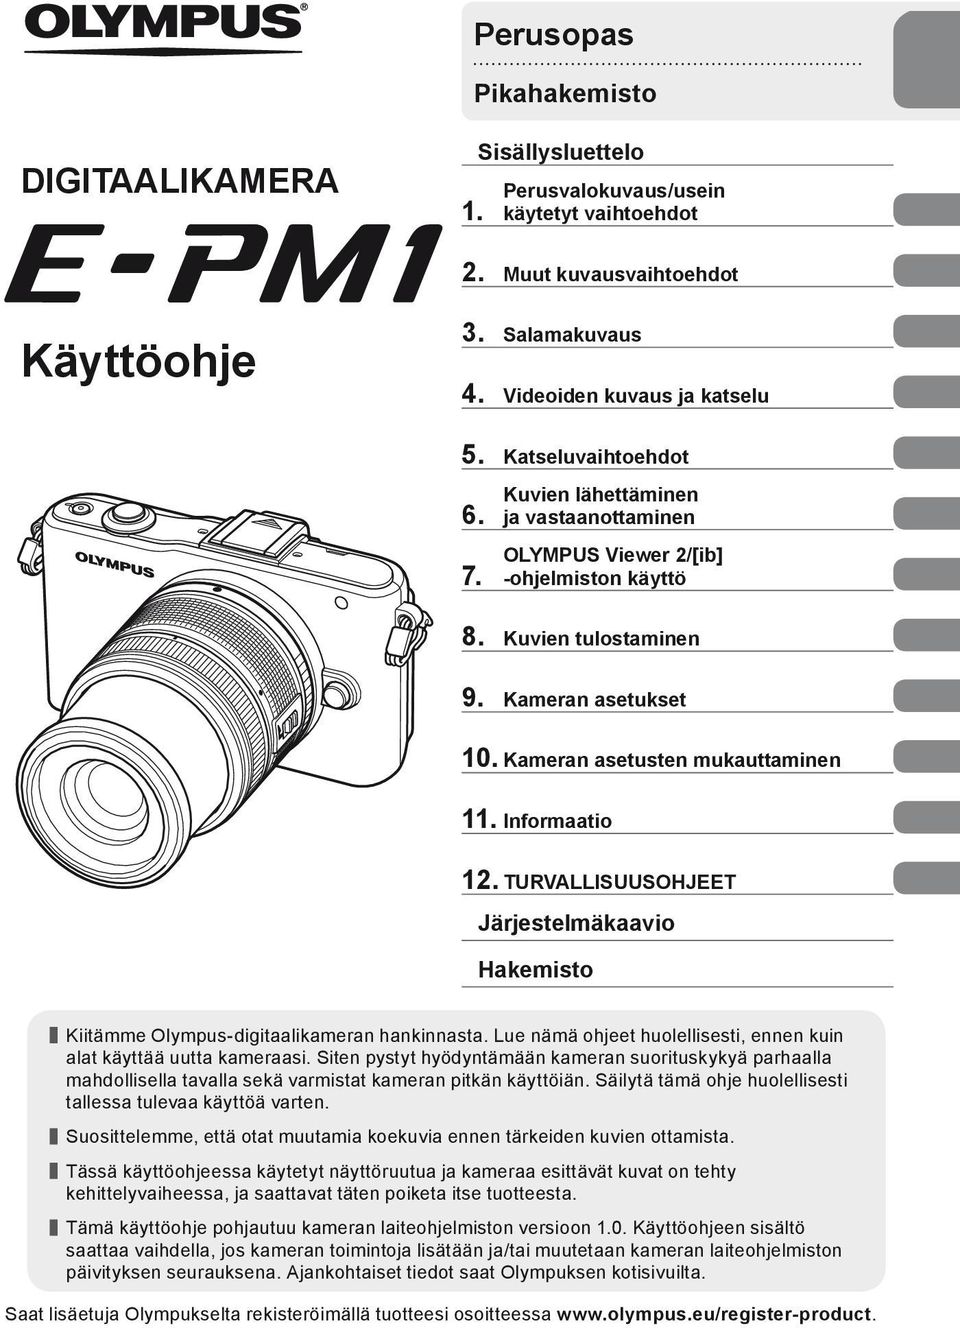 Informaatio 12. TURVALLISUUSOHJEET Järjestelmäkaavio Hakemisto Kiitämme Olympus-digitaalikameran hankinnasta. Lue nämä ohjeet huolellisesti, ennen kuin alat käyttää uutta kameraasi.